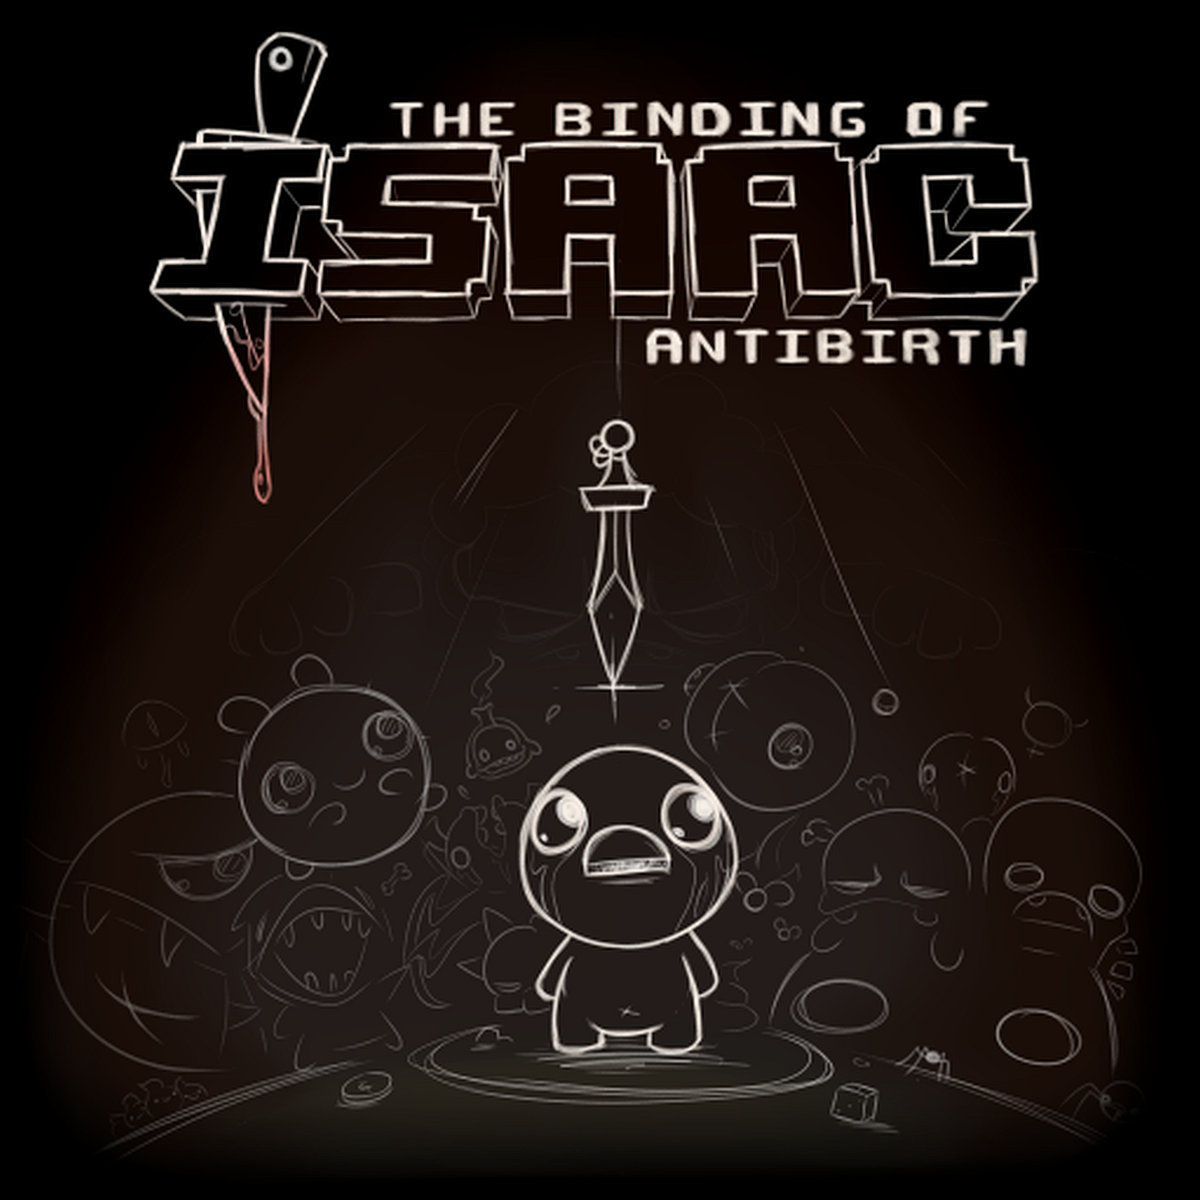 The Binding of Isaac: Antibirth - Memento Mori